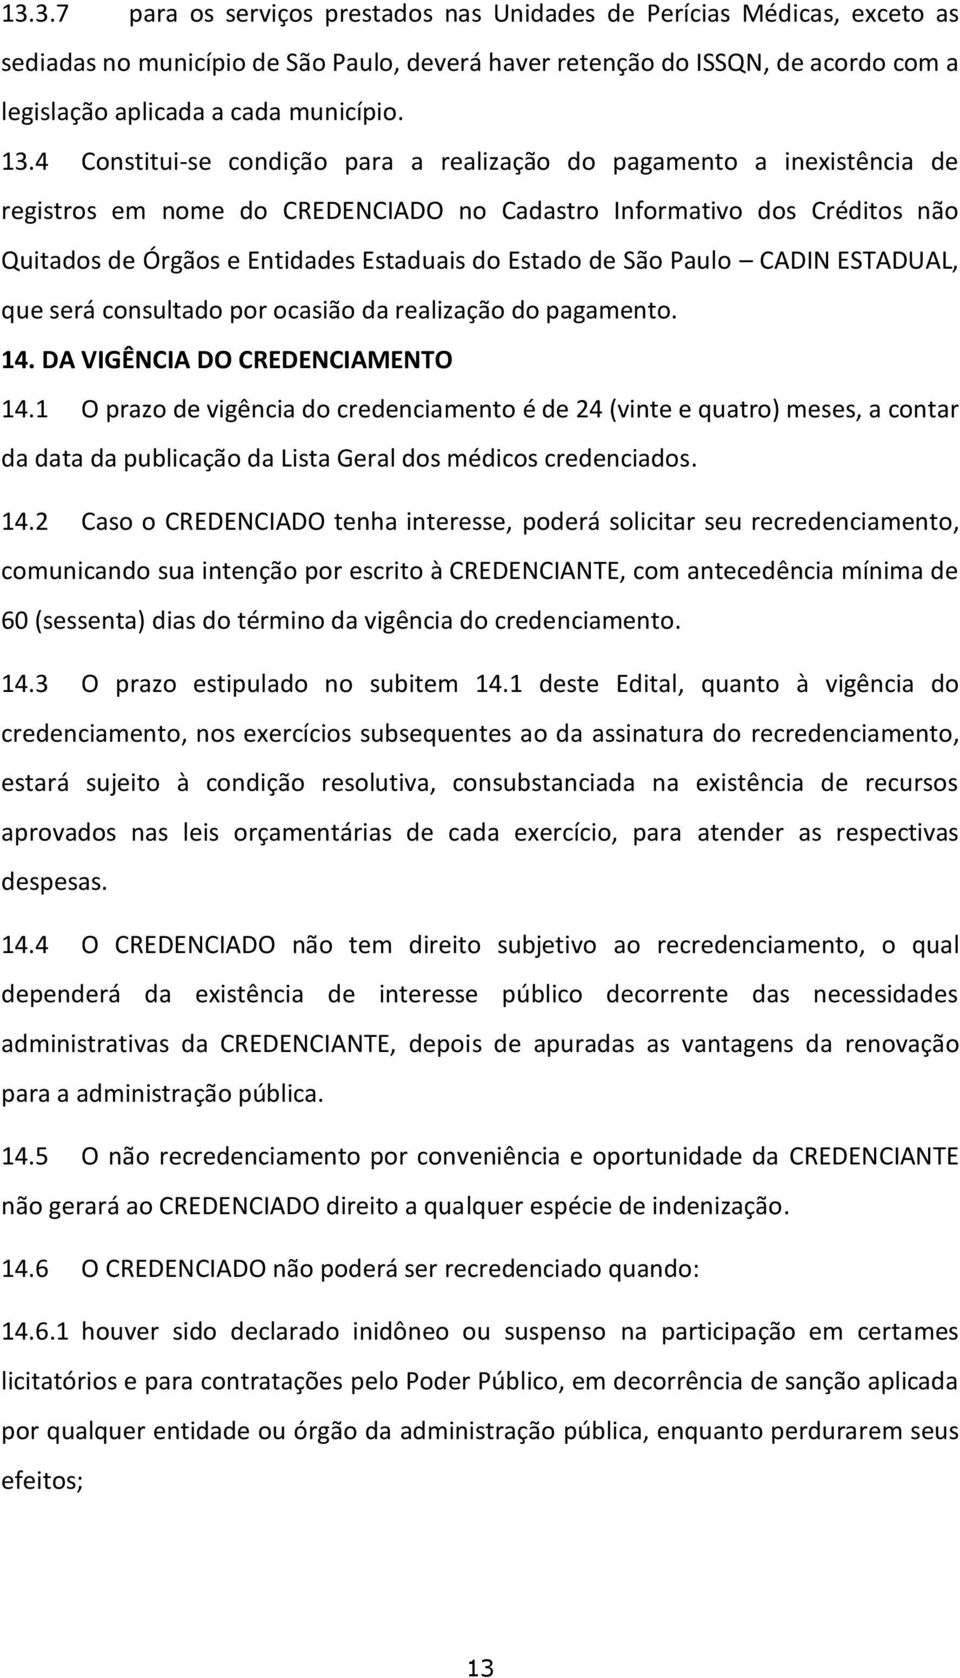 Estado de São Paulo CADIN ESTADUAL, que será consultado por ocasião da realização do pagamento. 14. DA VIGÊNCIA DO CREDENCIAMENTO 14.